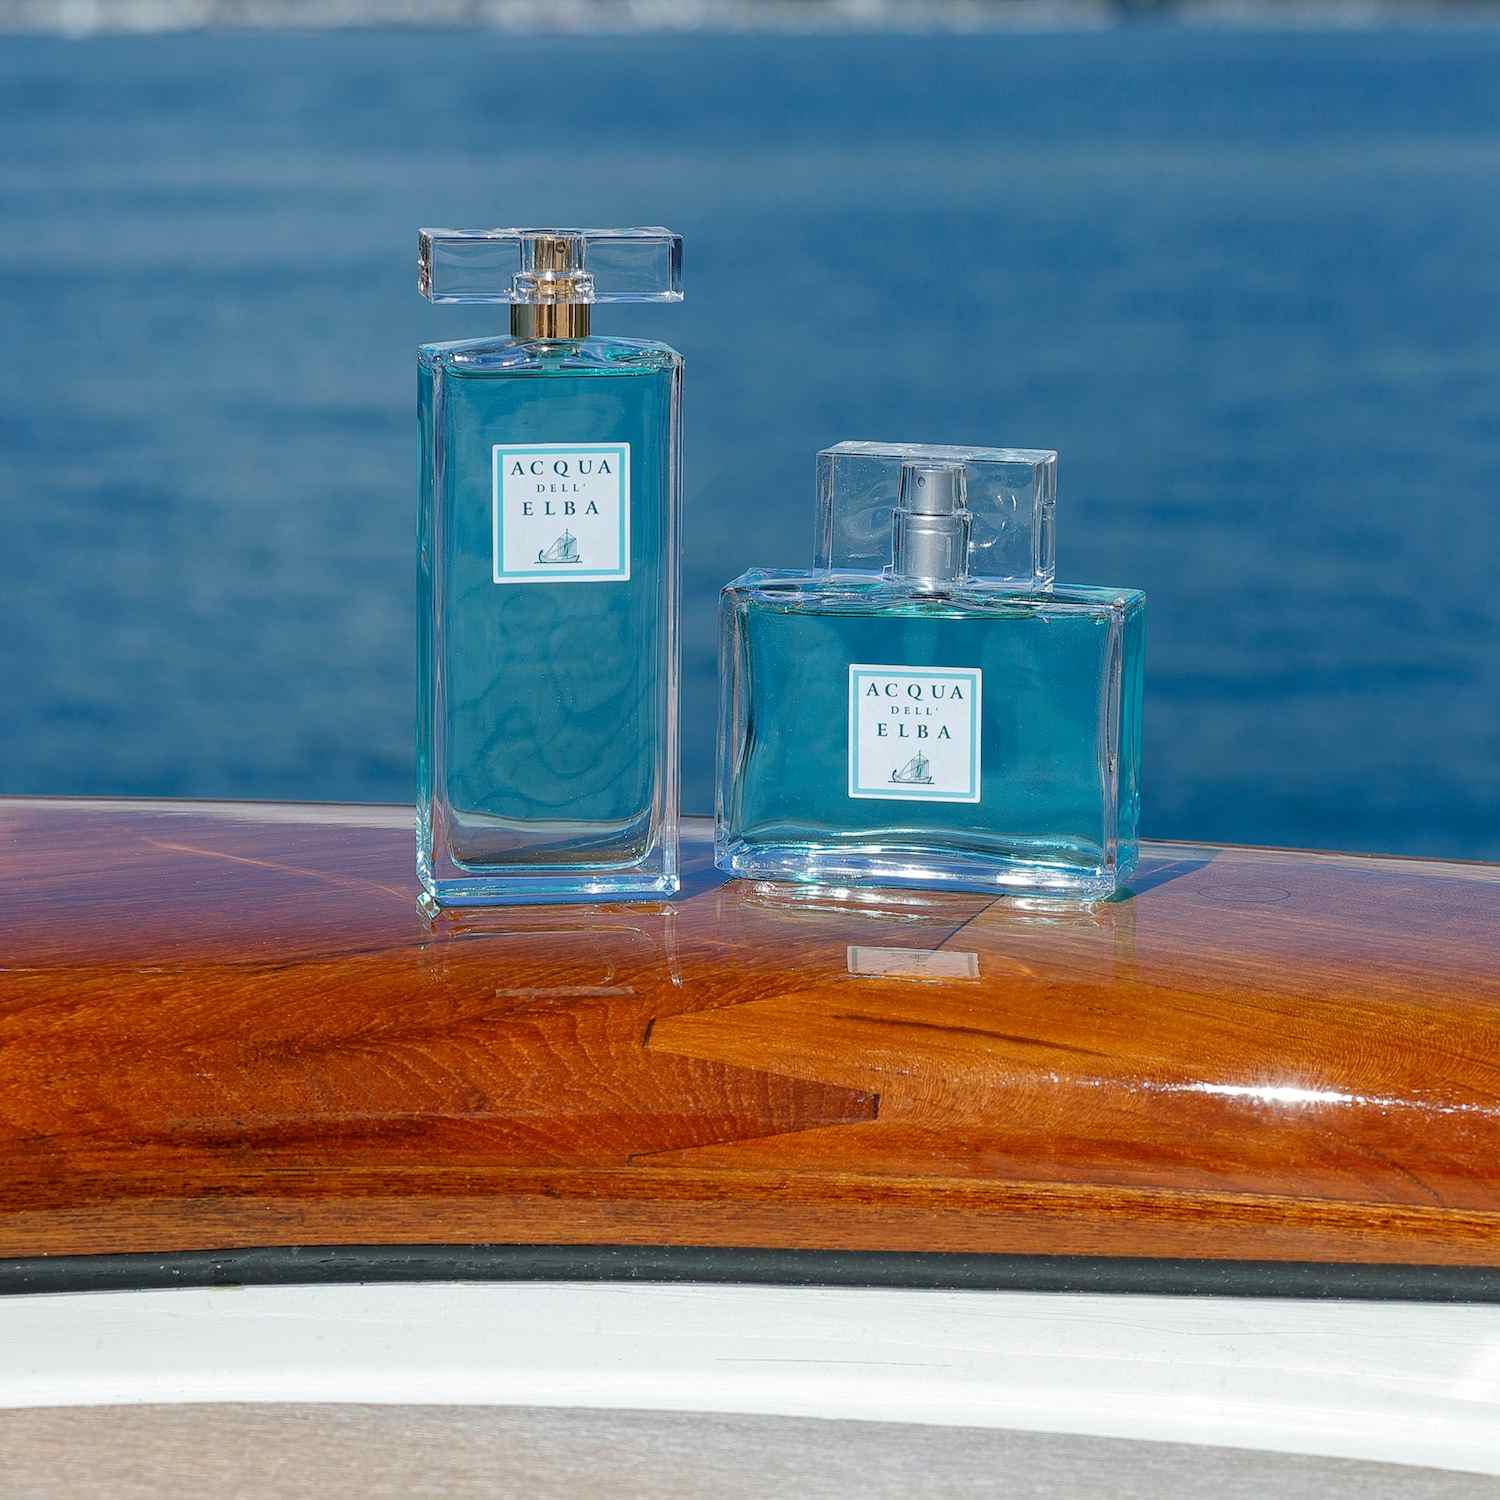 Yachting di Acqua dell'Elba è un necessaire che contiene: bagnodoccia,shampoo,balsamo, crema e saponetta.Per avere addosso il profumo del mare